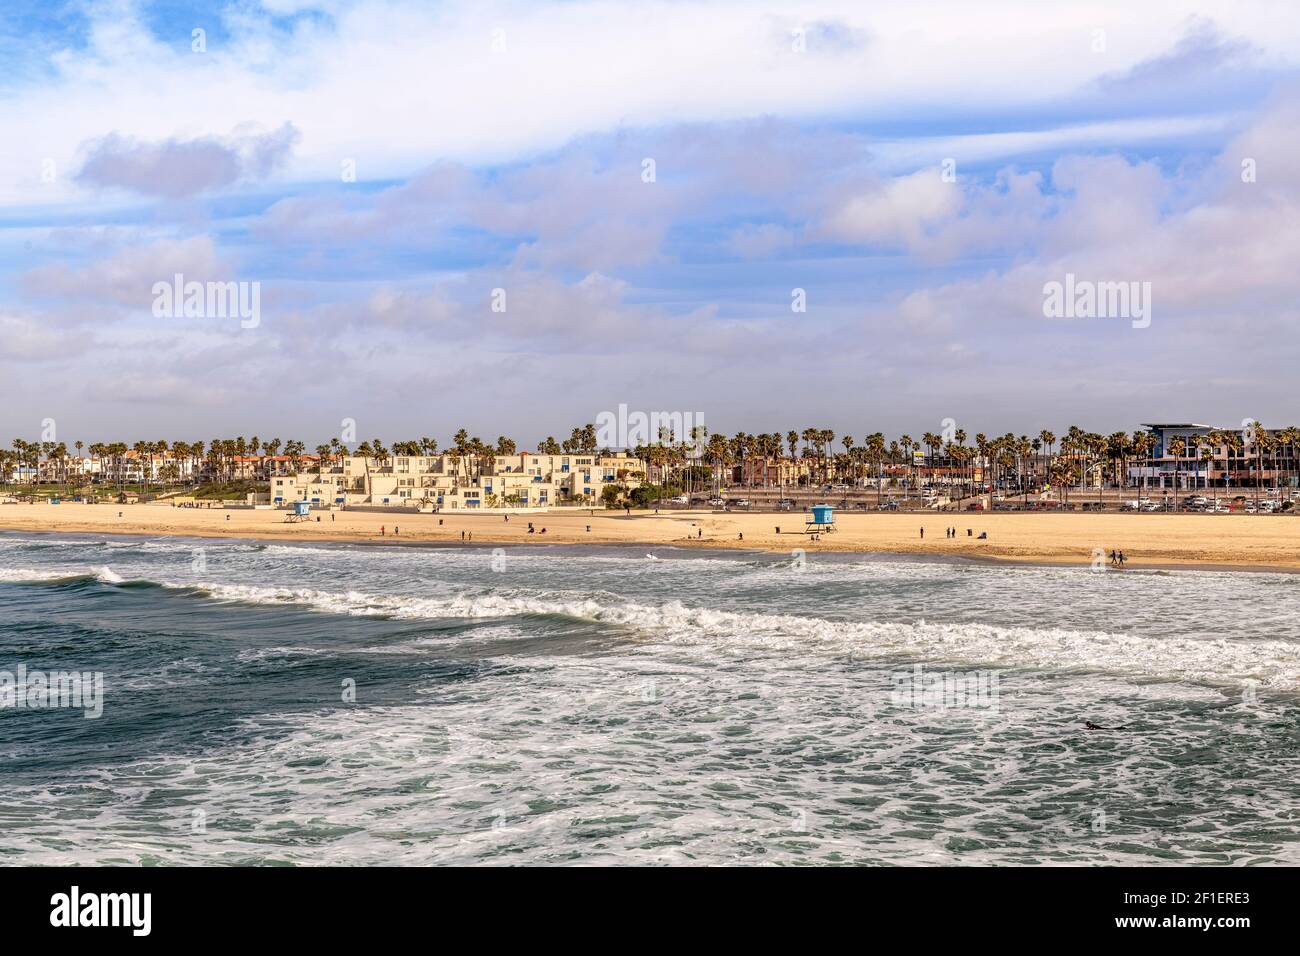 Le célèbre rivage de Huntington Beach pendant une journée ensoleillée et lumineuse montre le mouvement de l'eau et le rivage populaire. Banque D'Images